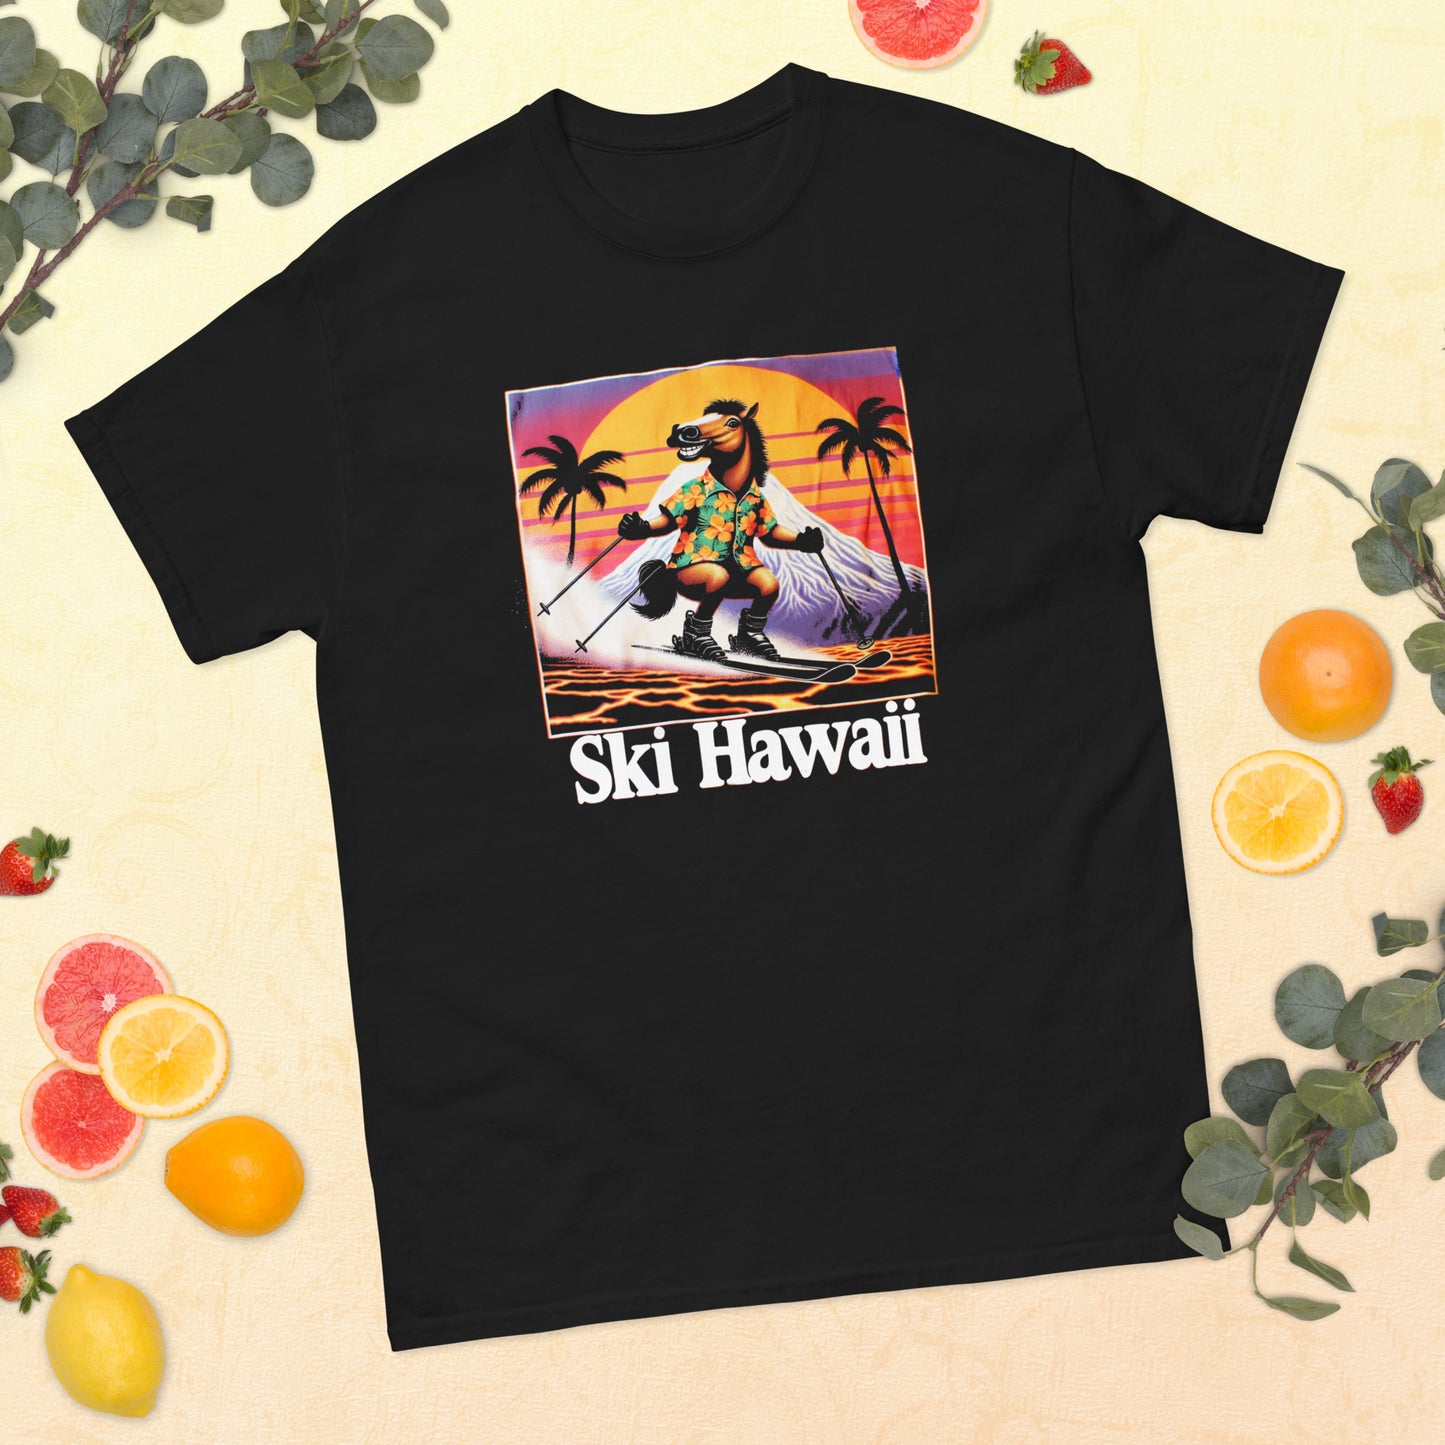 Ski Hawaii horse skiing printed t-shirt by Whistler Shirts